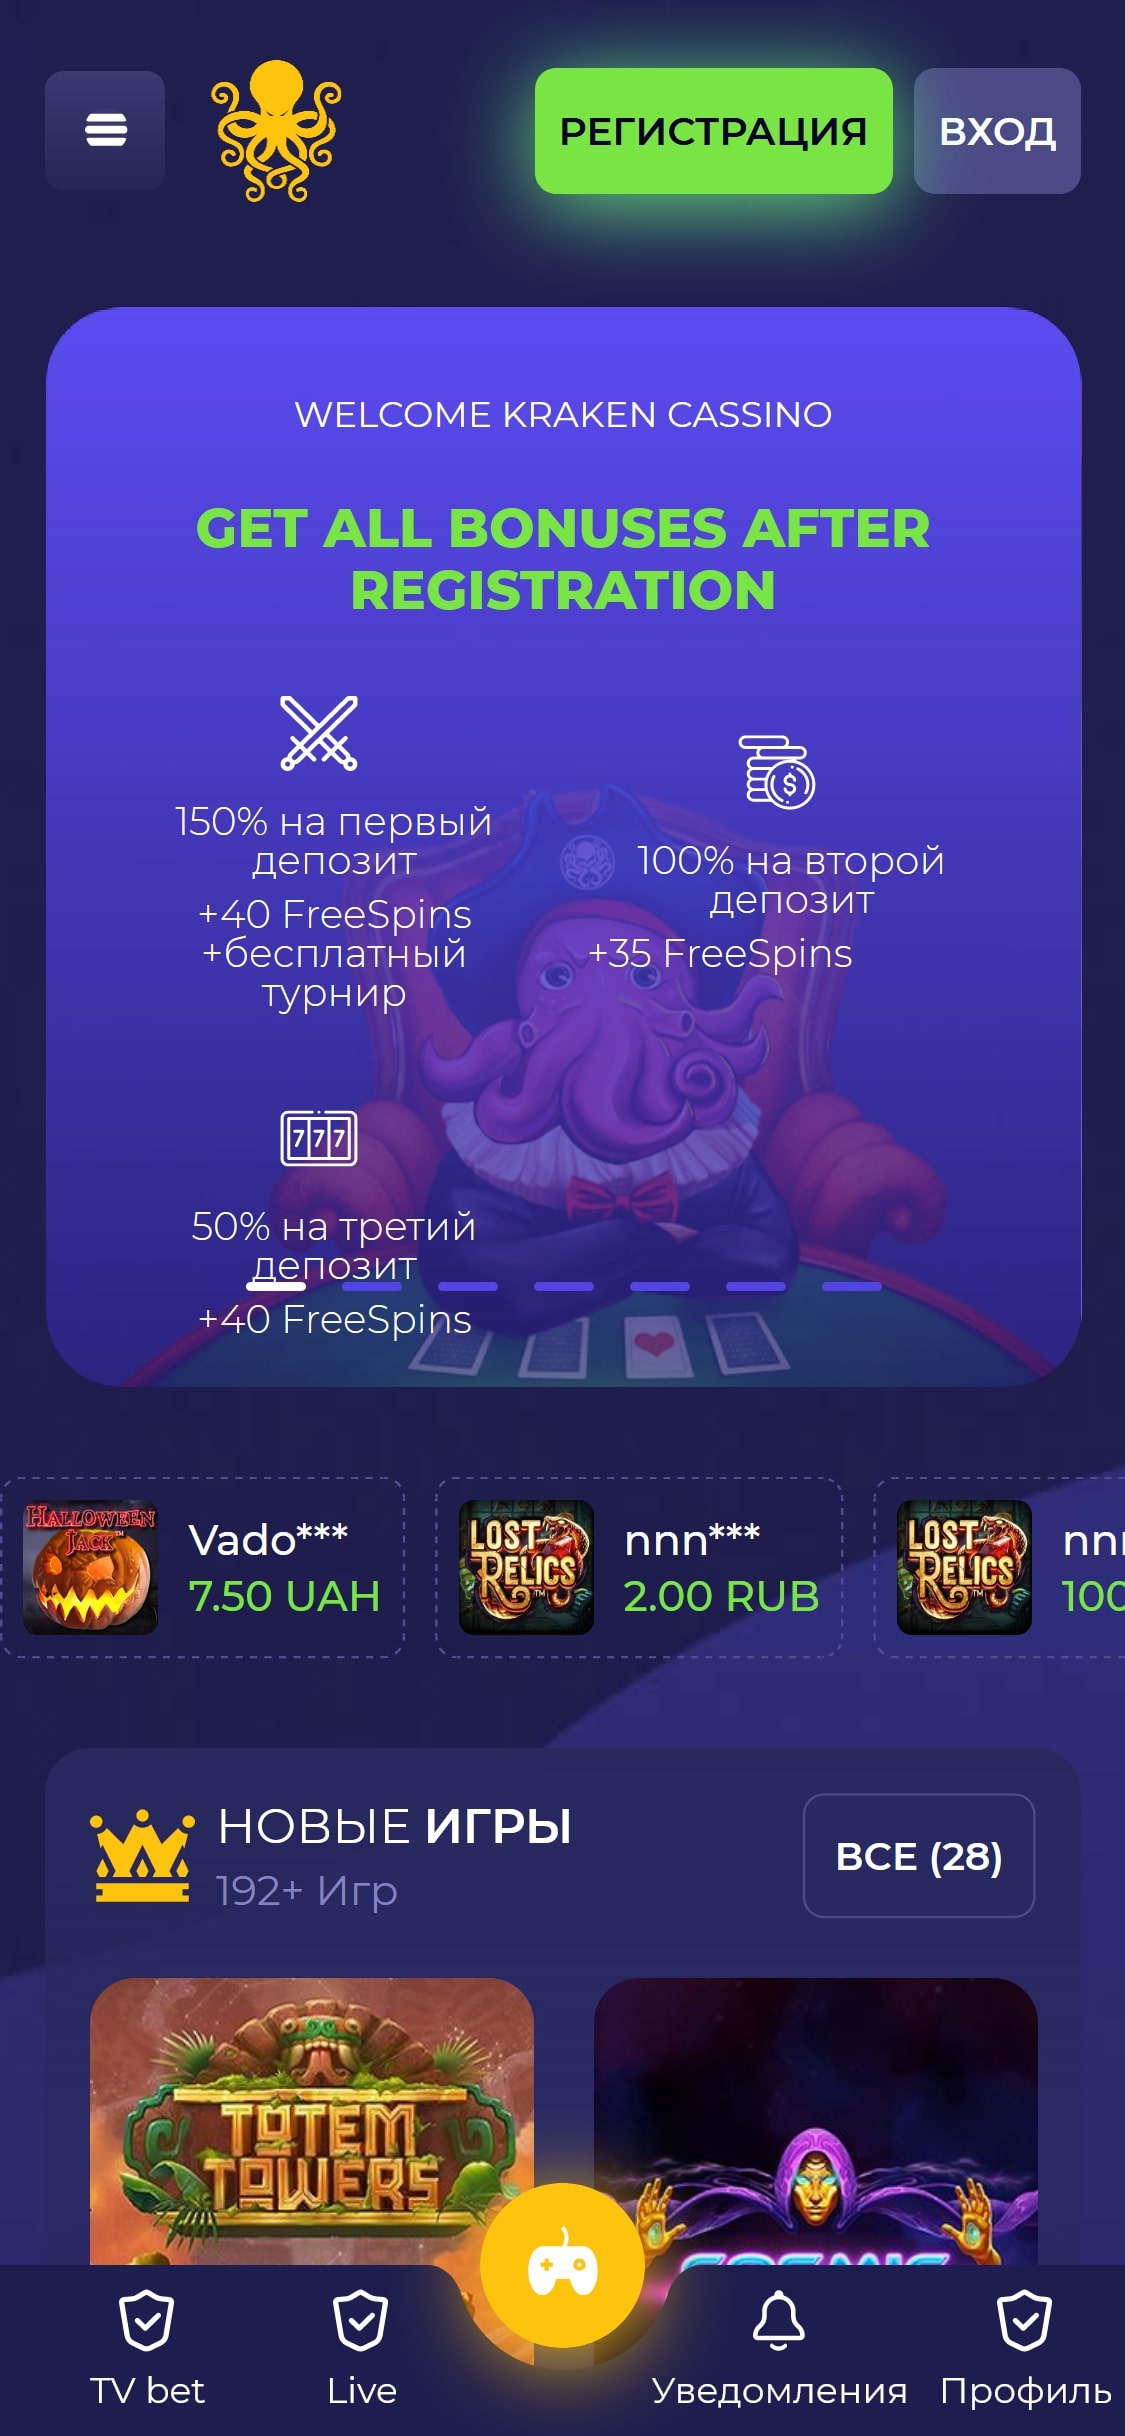 Kraken Casino Mobile Review